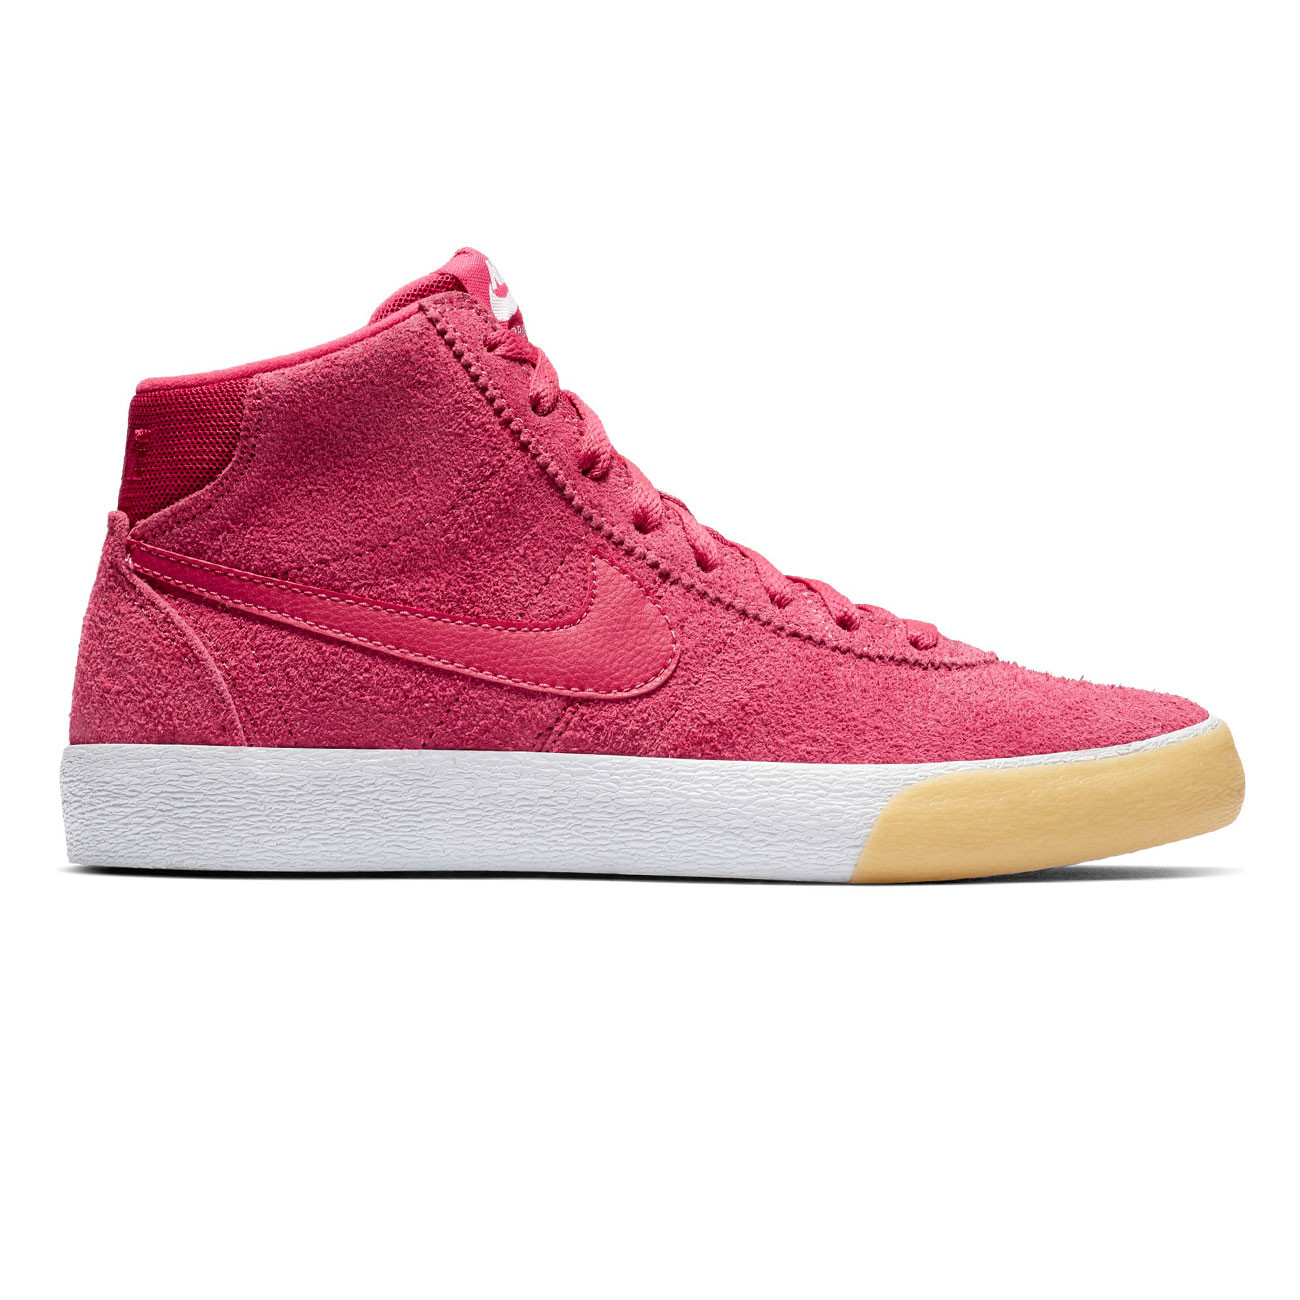 Sneakers Nike SB Bruin Hi rush pink 